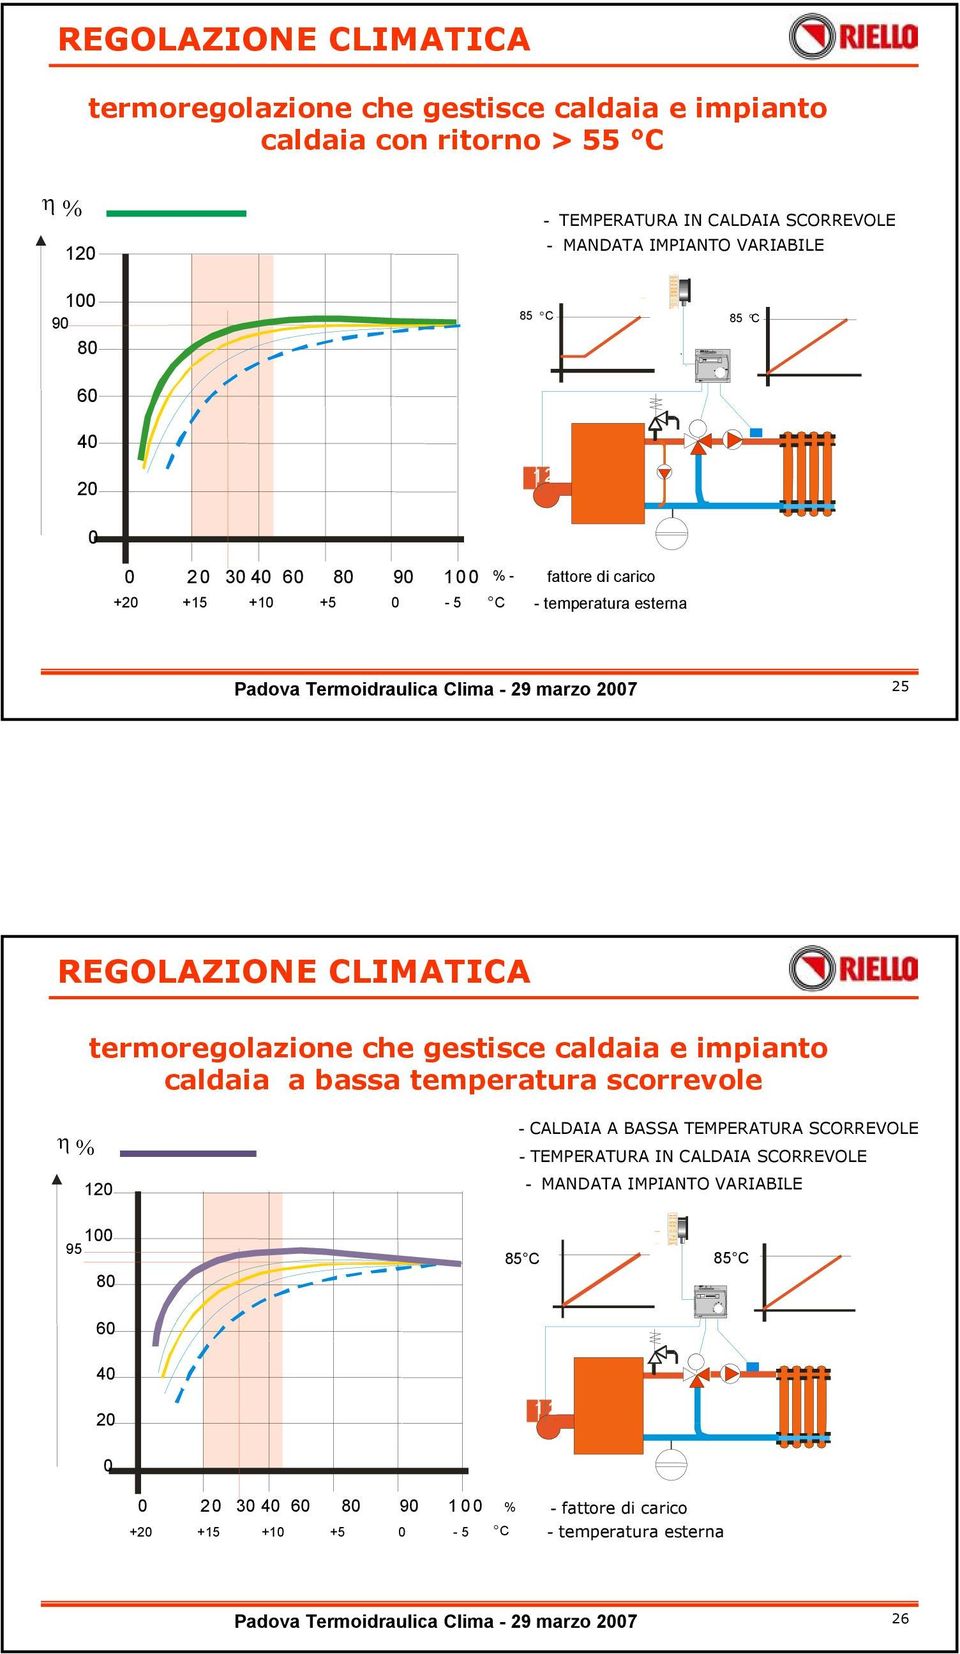 termoregolazione che gestisce caldaia e impianto caldaia a bassa temperatura scorrevole η % 120 - CALDAIA A BASSA TEMPERATURA SCORREVOLE - TEMPERATURA IN CALDAIA